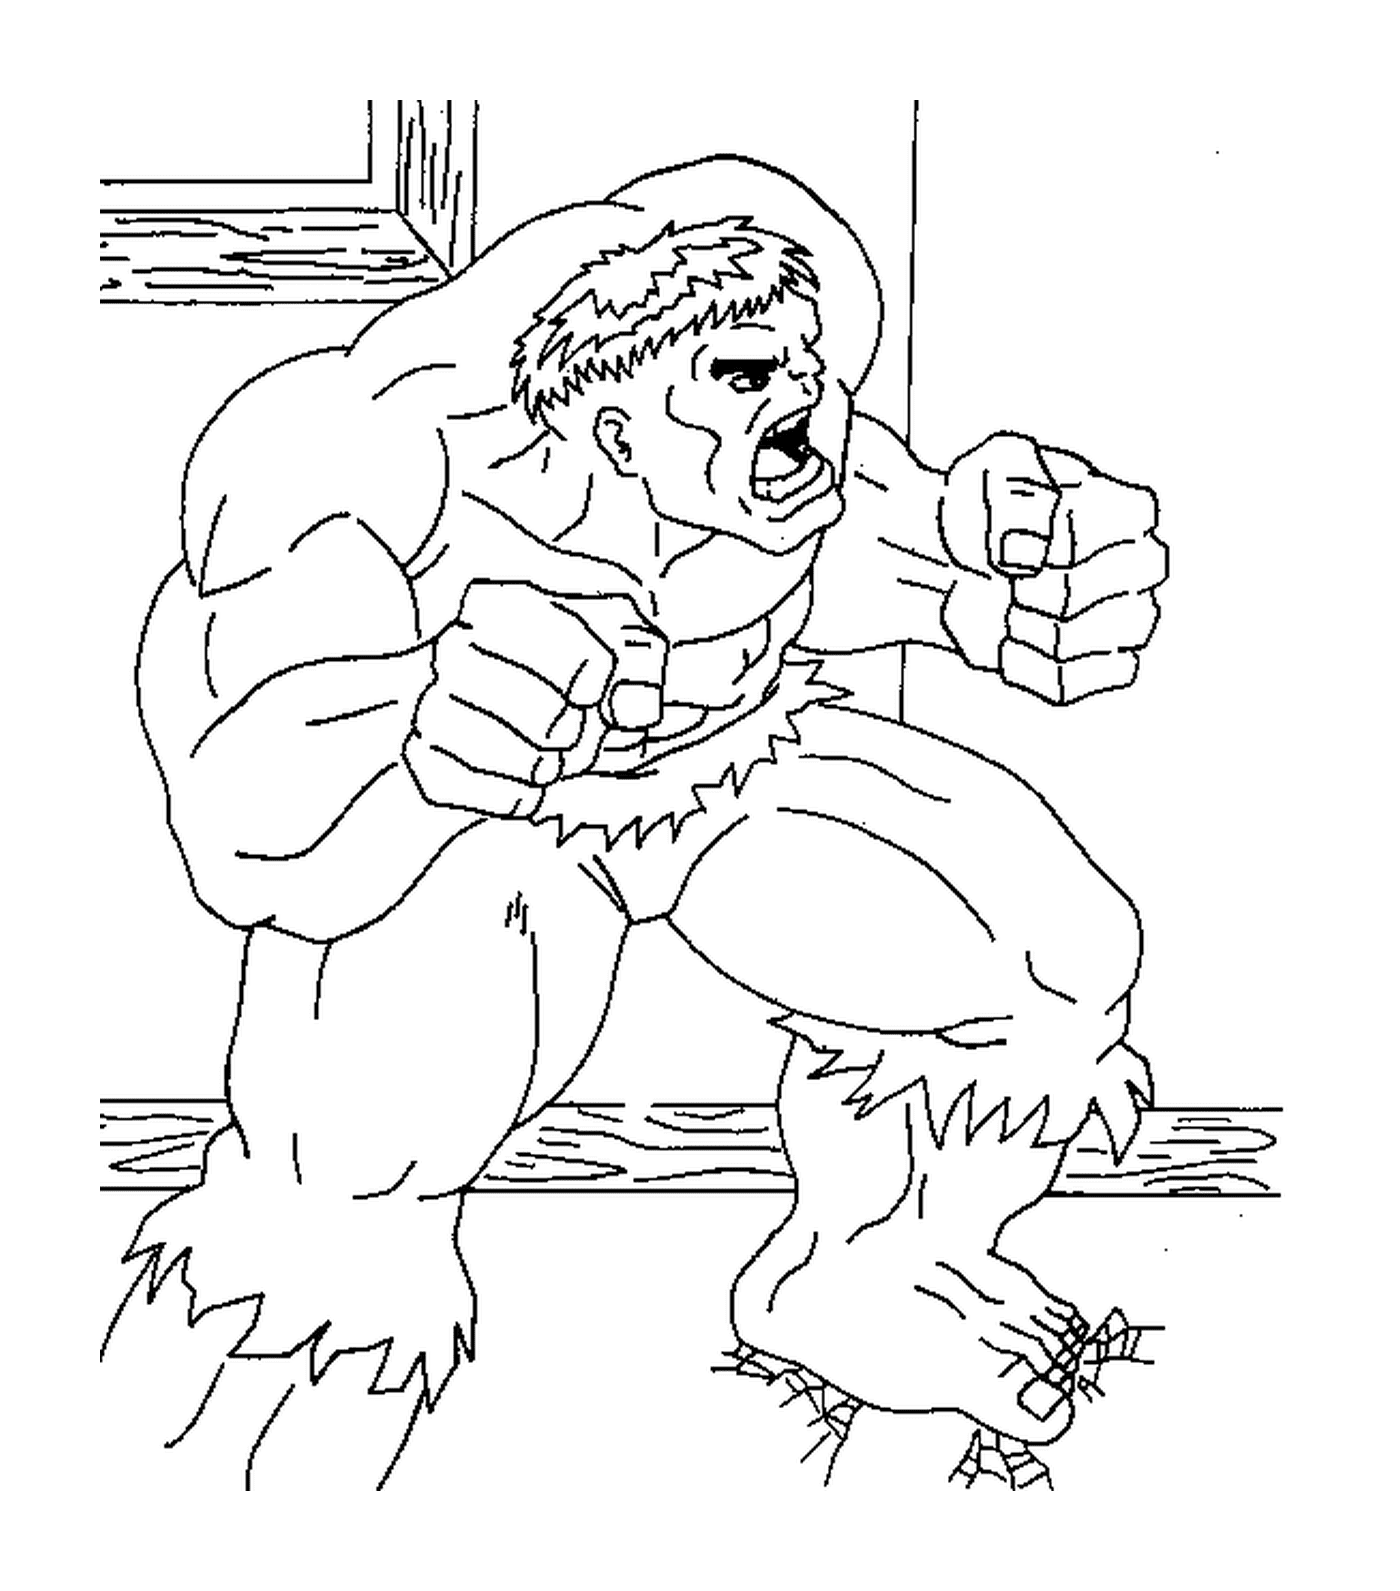  Hulk raivoso dos Vingadores 